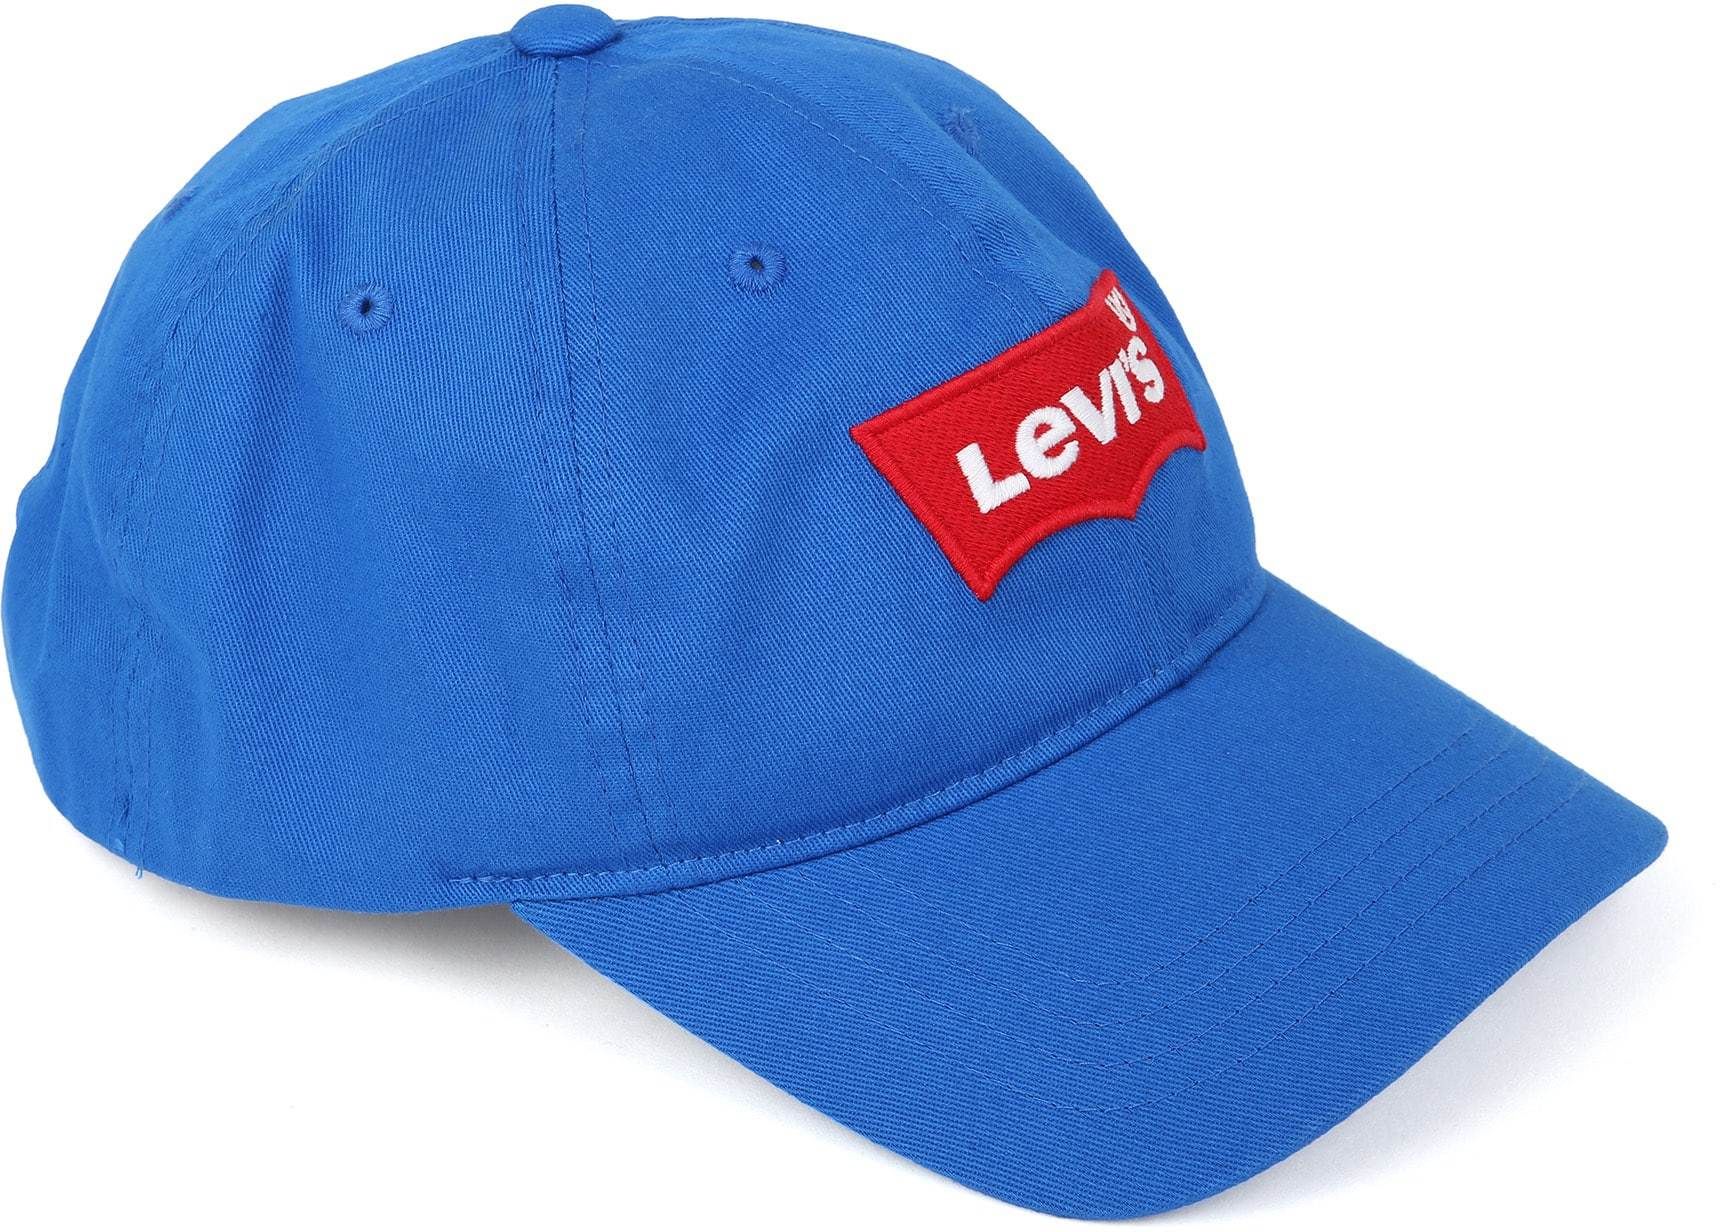 Levis - Levi's cap flex blue